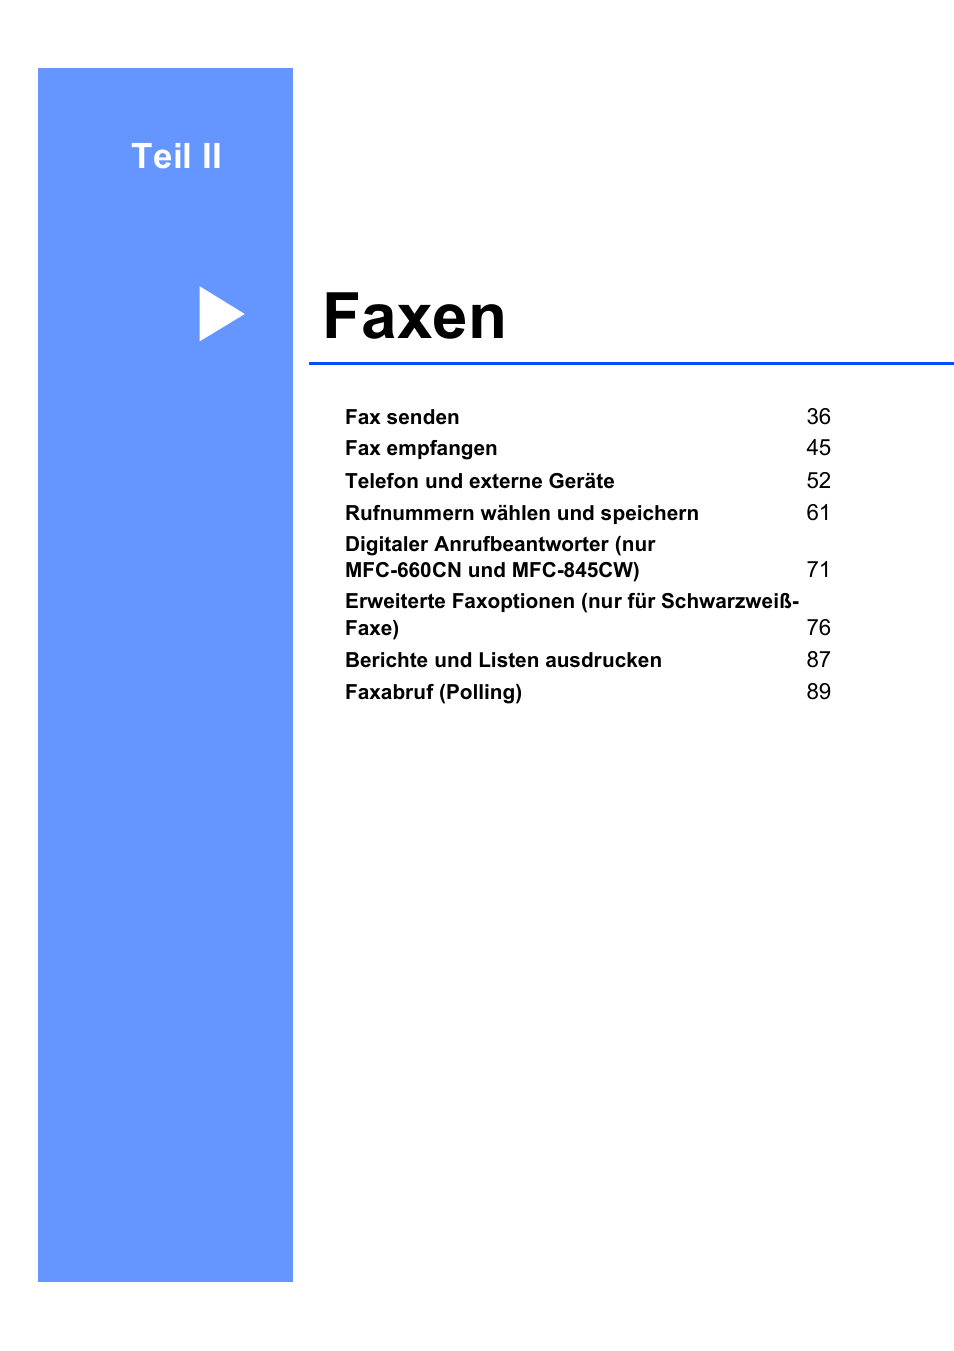 Teil ii: faxen, Teil ii, Faxen | Brother MFC-845CW Benutzerhandbuch | Seite 47 / 211